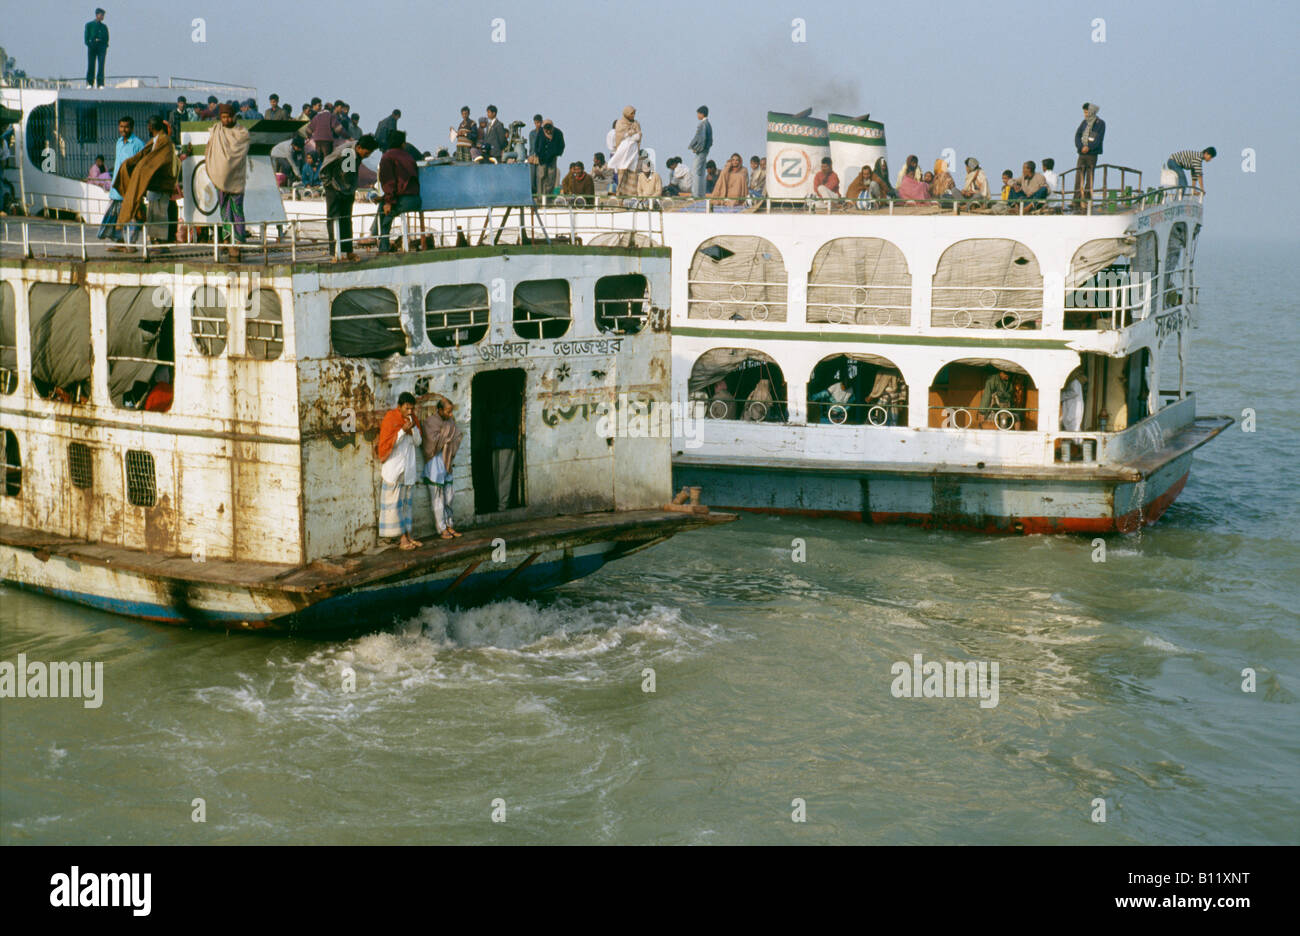 La foule sur les écrans de vieux traversant une rivière au Bangladesh Banque D'Images